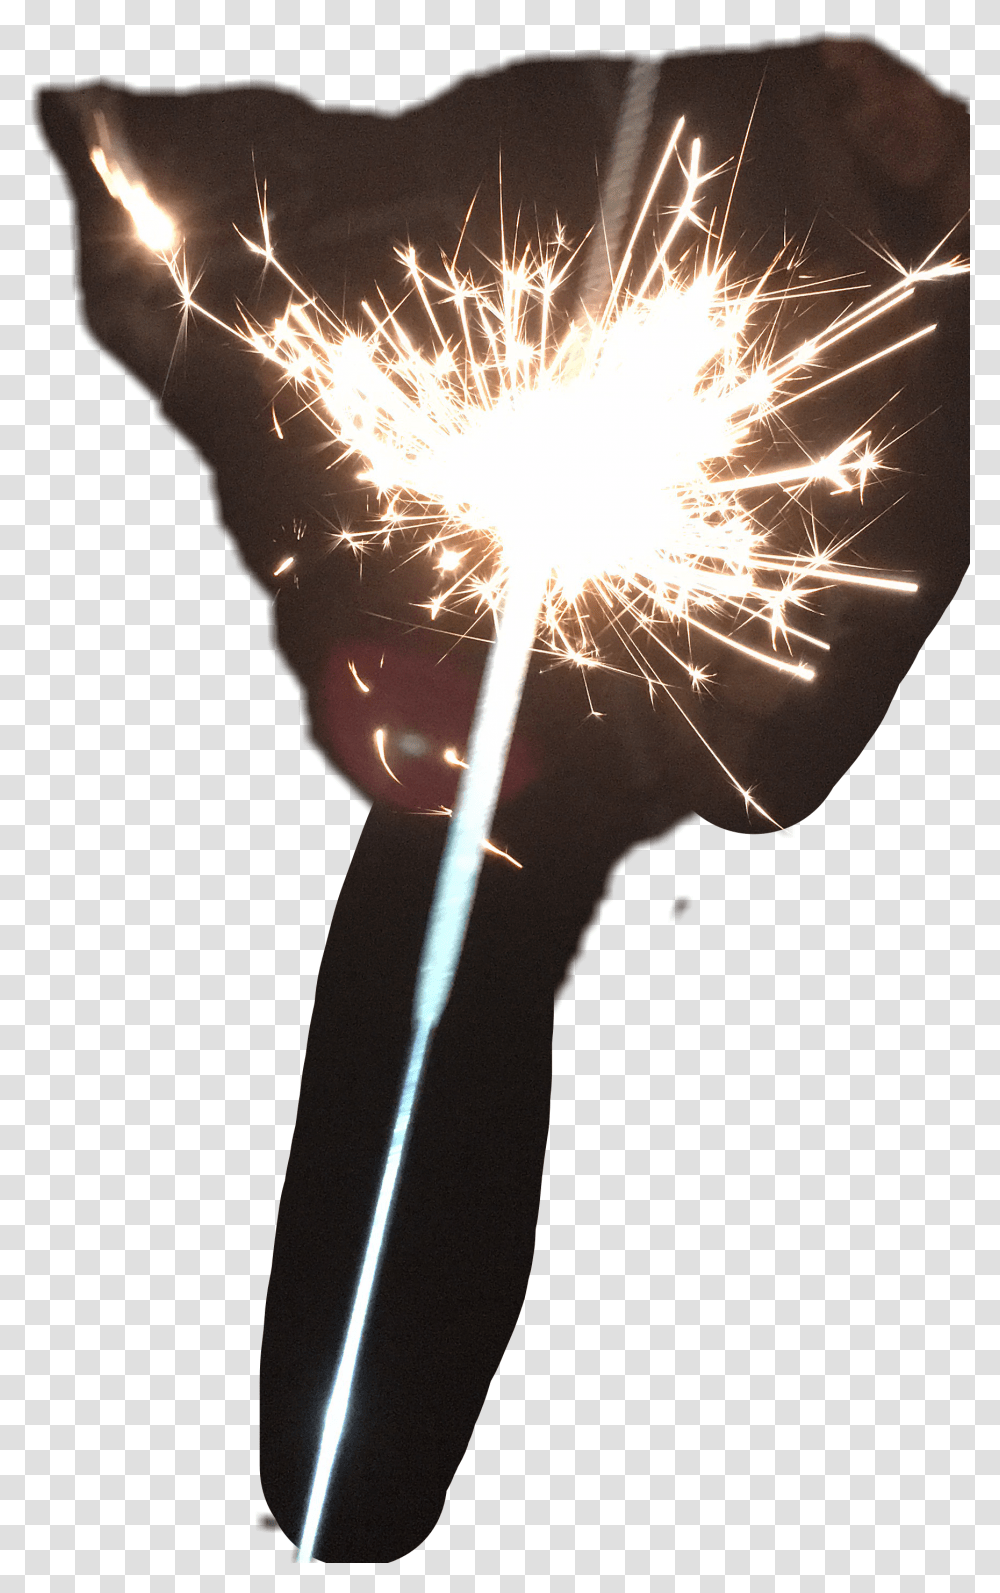 Download Sparkler Fireworks Fire Works Sparkler, Nature, Outdoors, Flare, Light Transparent Png